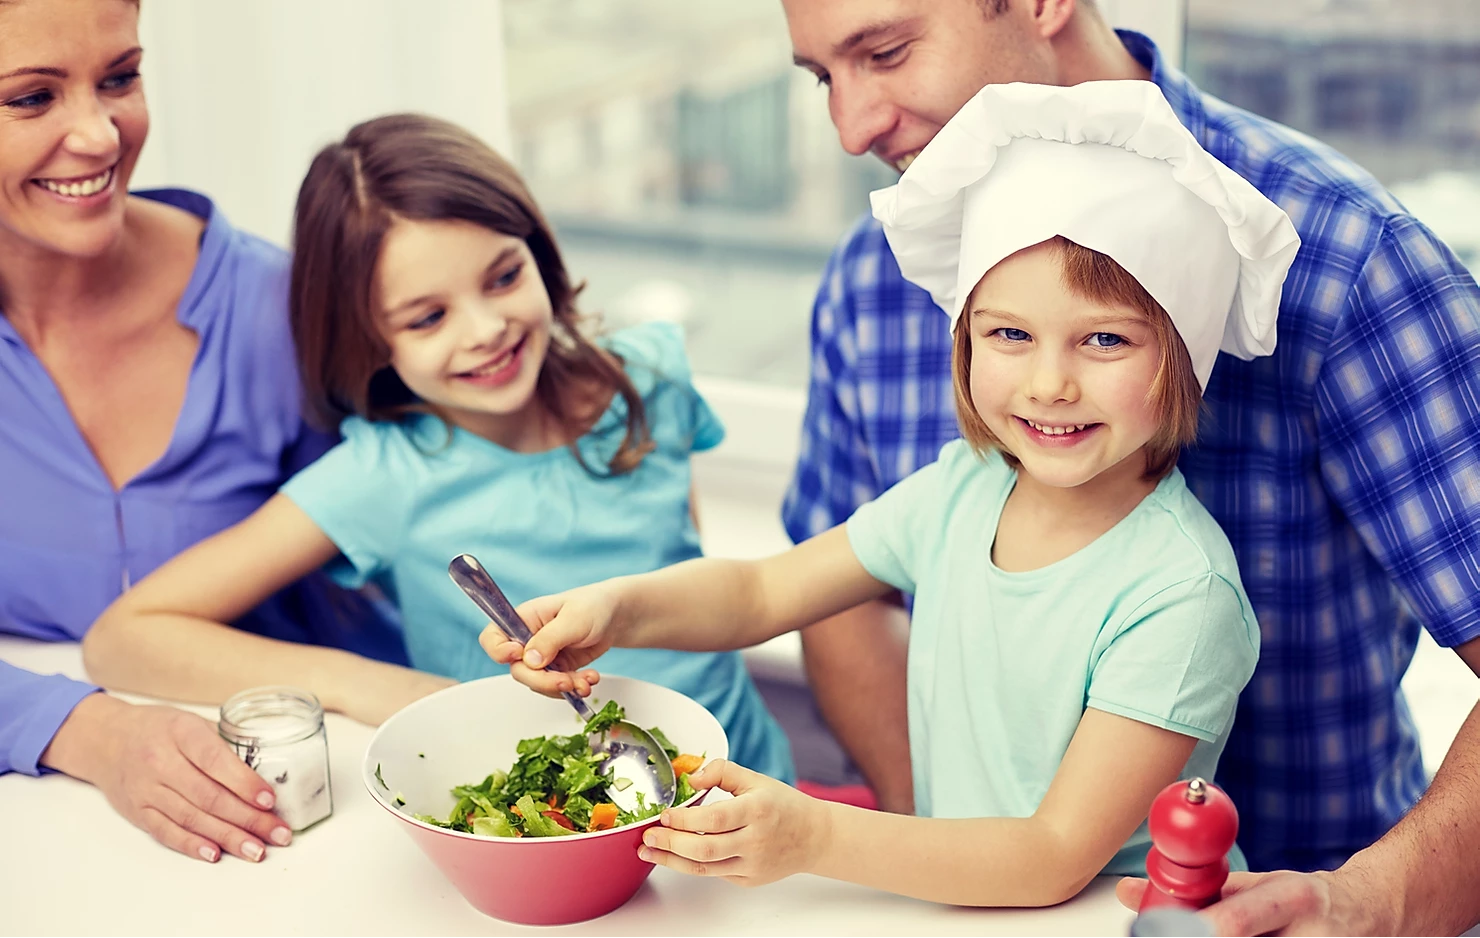 Обед для детей. Семья на кухне. Здоровое питание в семье. Совместная готовка с детьми.